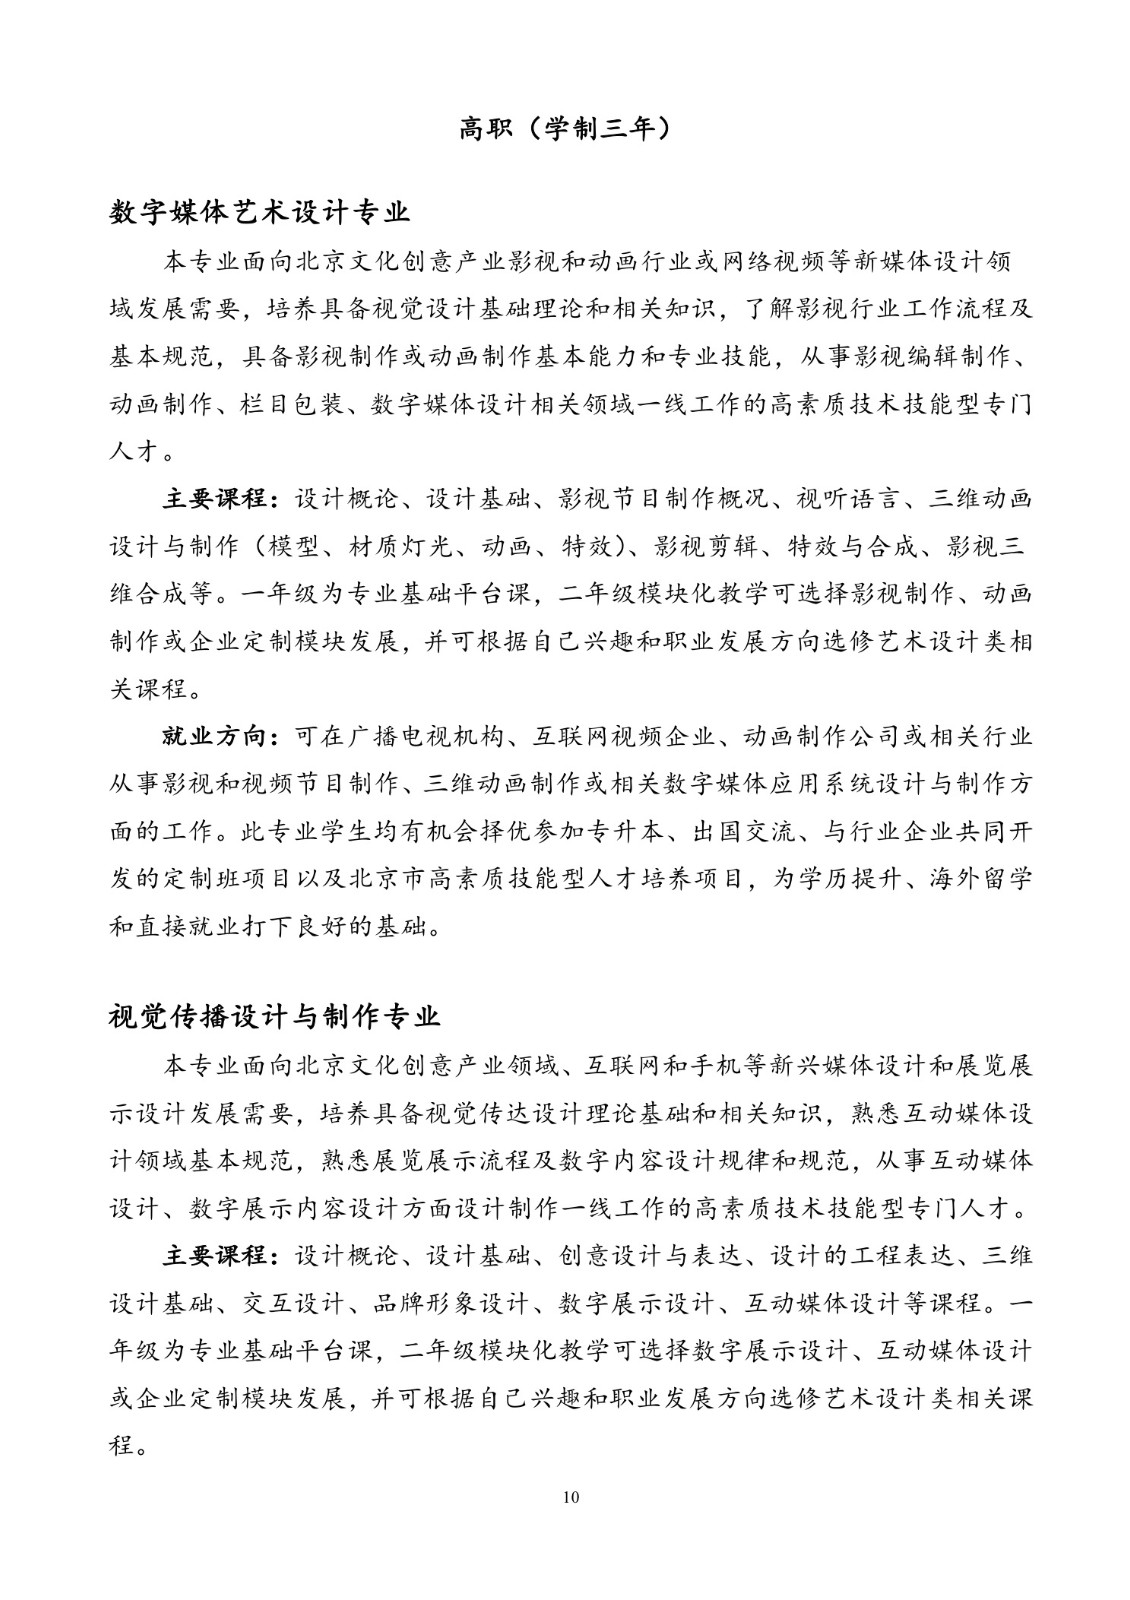 北京联合大学2018年艺术类招生简章20180103-page10 2.jpeg